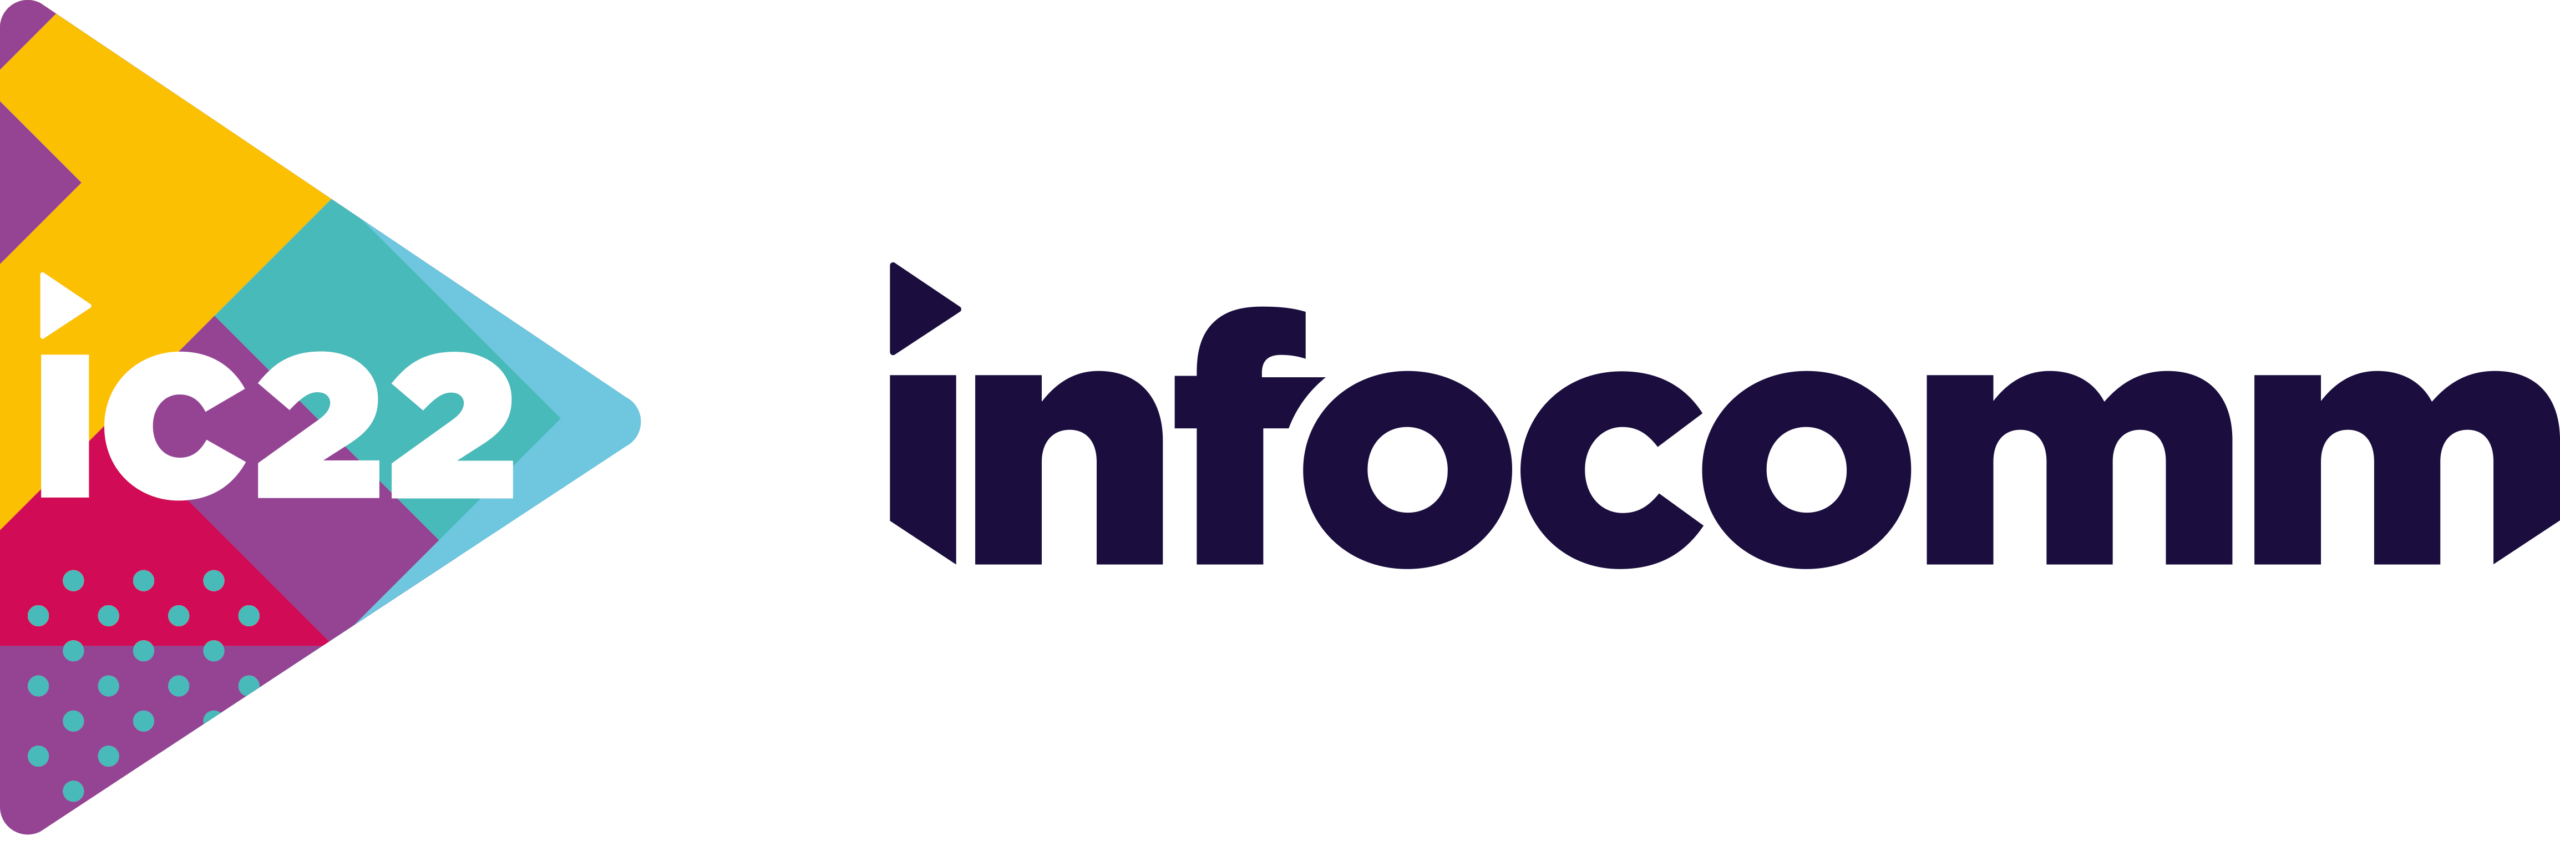 infocomm 2022 logo